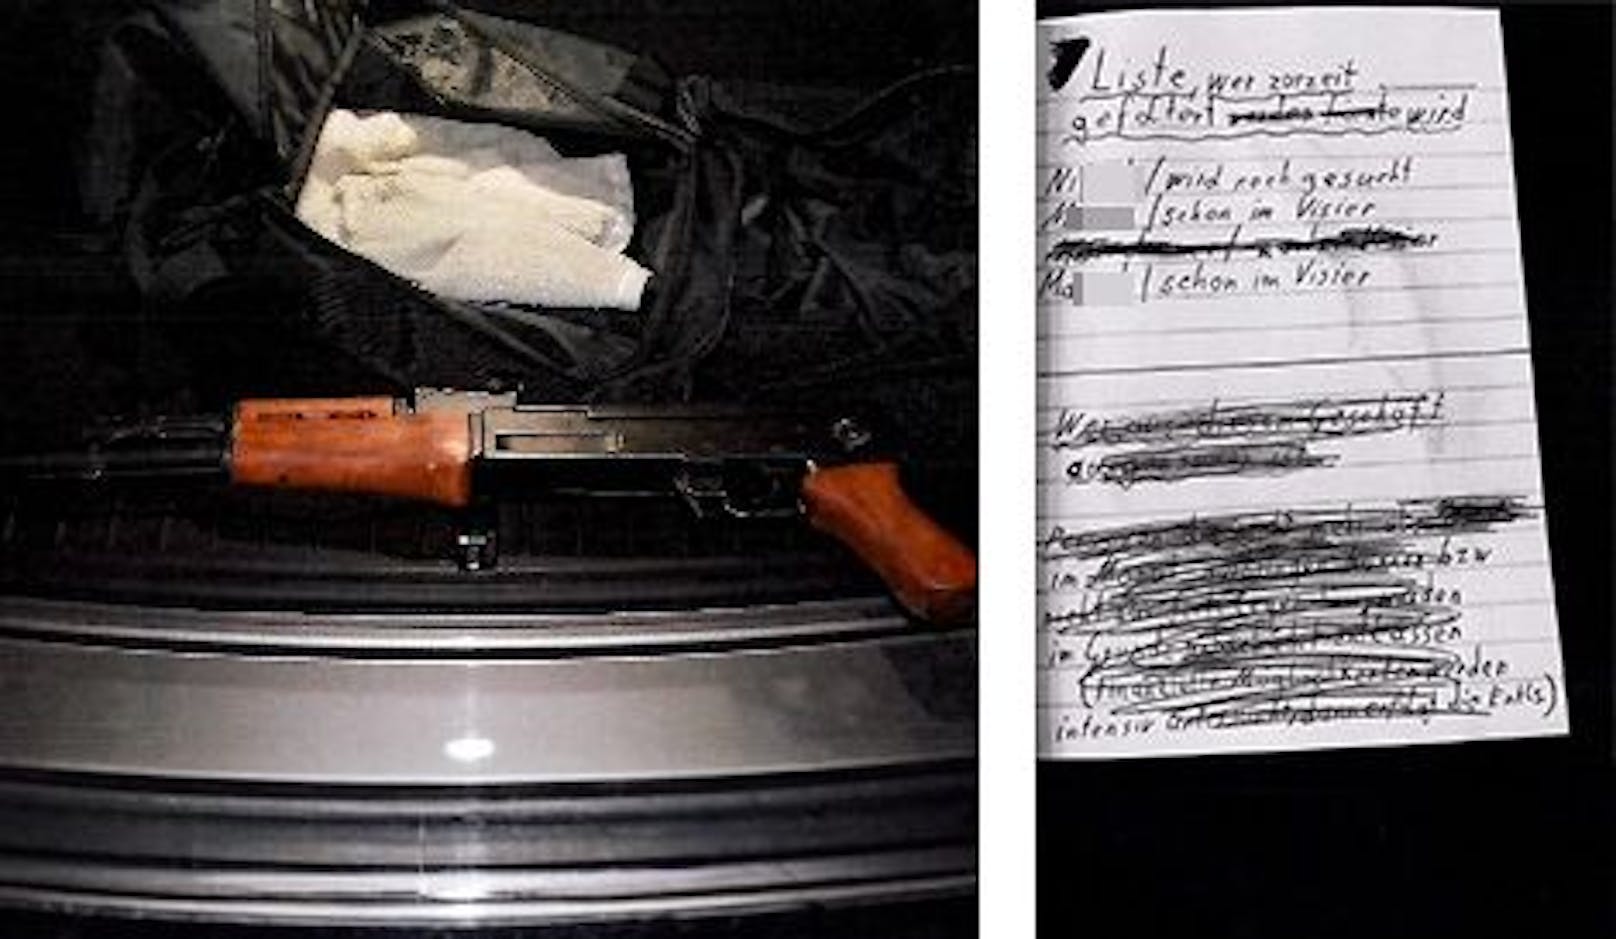 Die gefundene Kalaschnikow im Kofferraum, daneben die Folterliste mit weiteren Opfern.